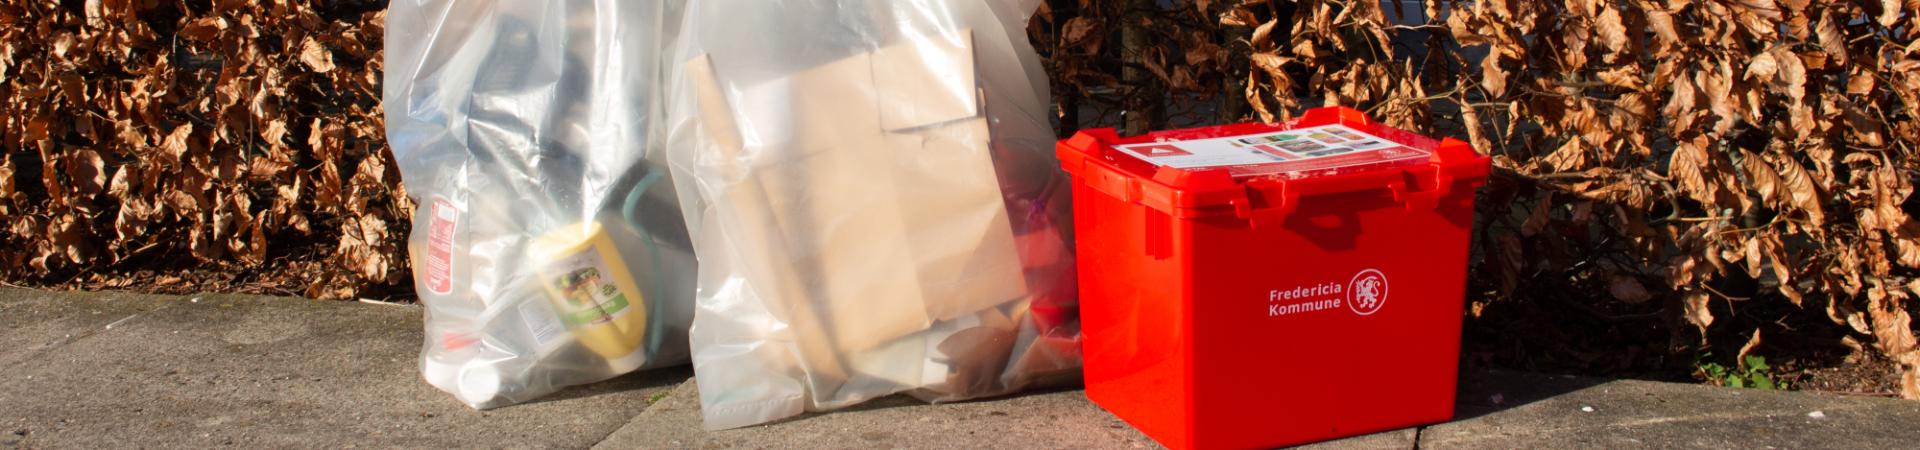 Rød kasse til farligt affald foran hæk sammen med sække til genbrug. 